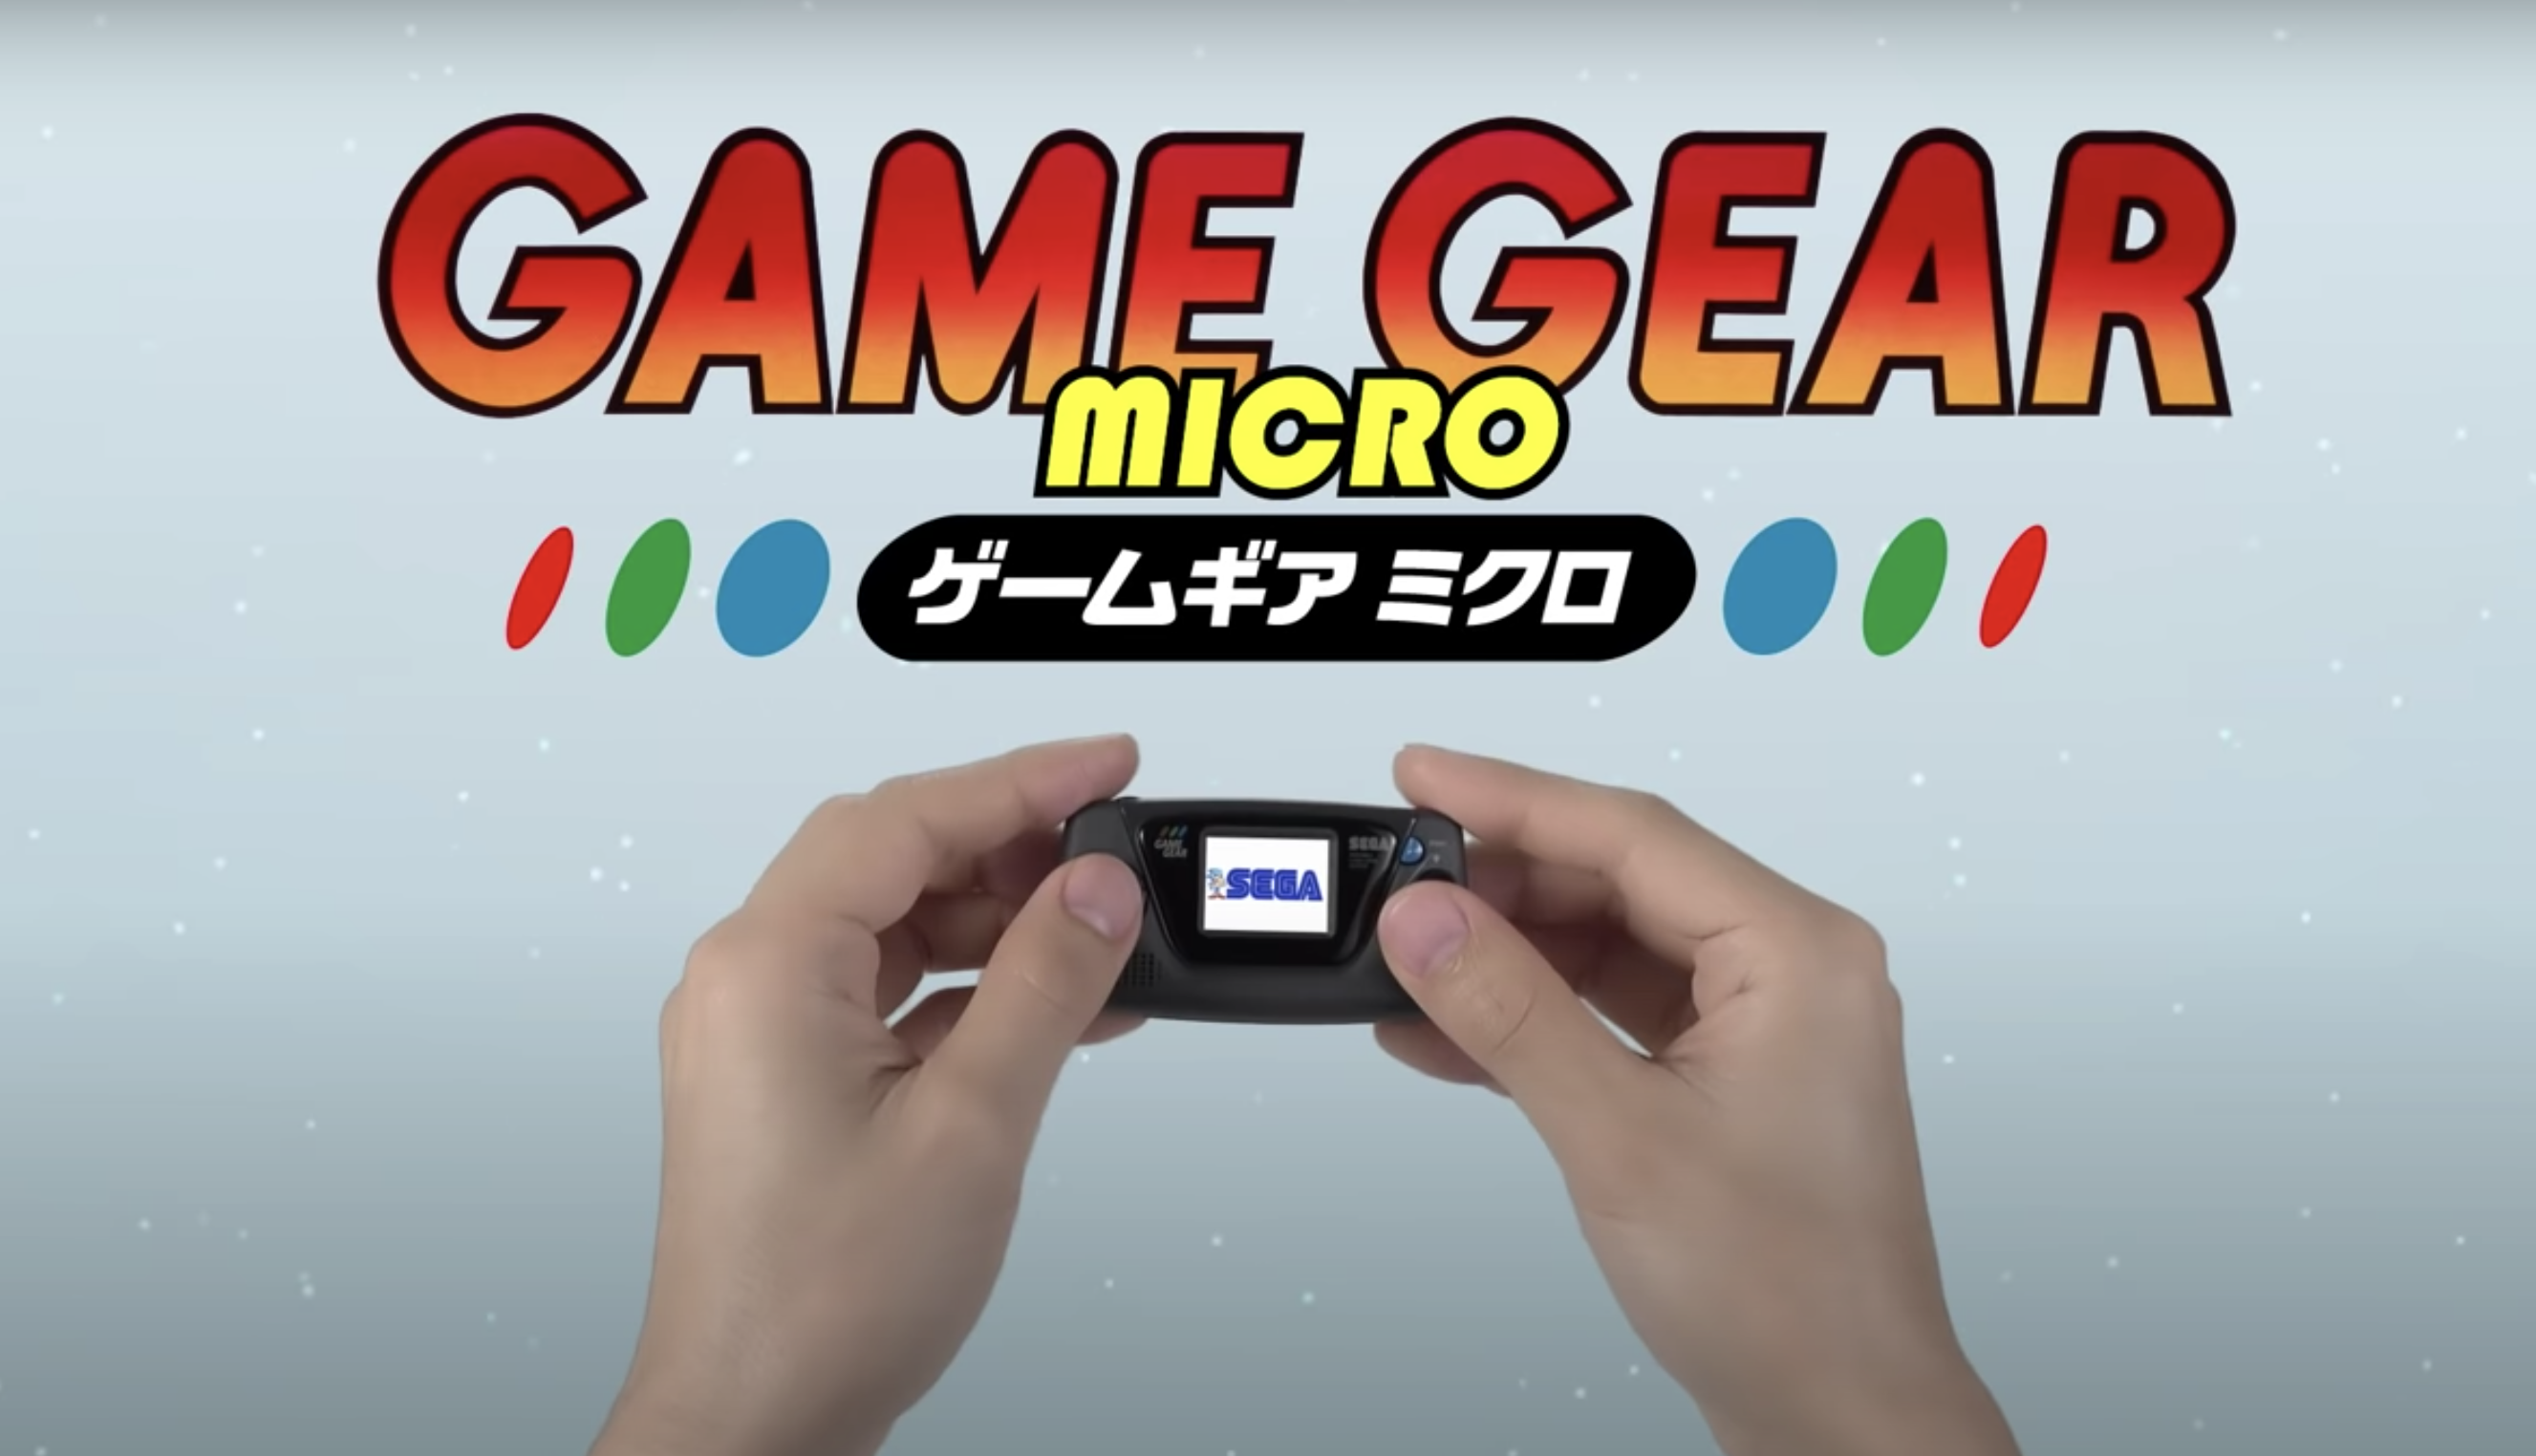 Вы сейчас просматриваете Sega празднует свое 60-летие с Микро версией Game Gear!